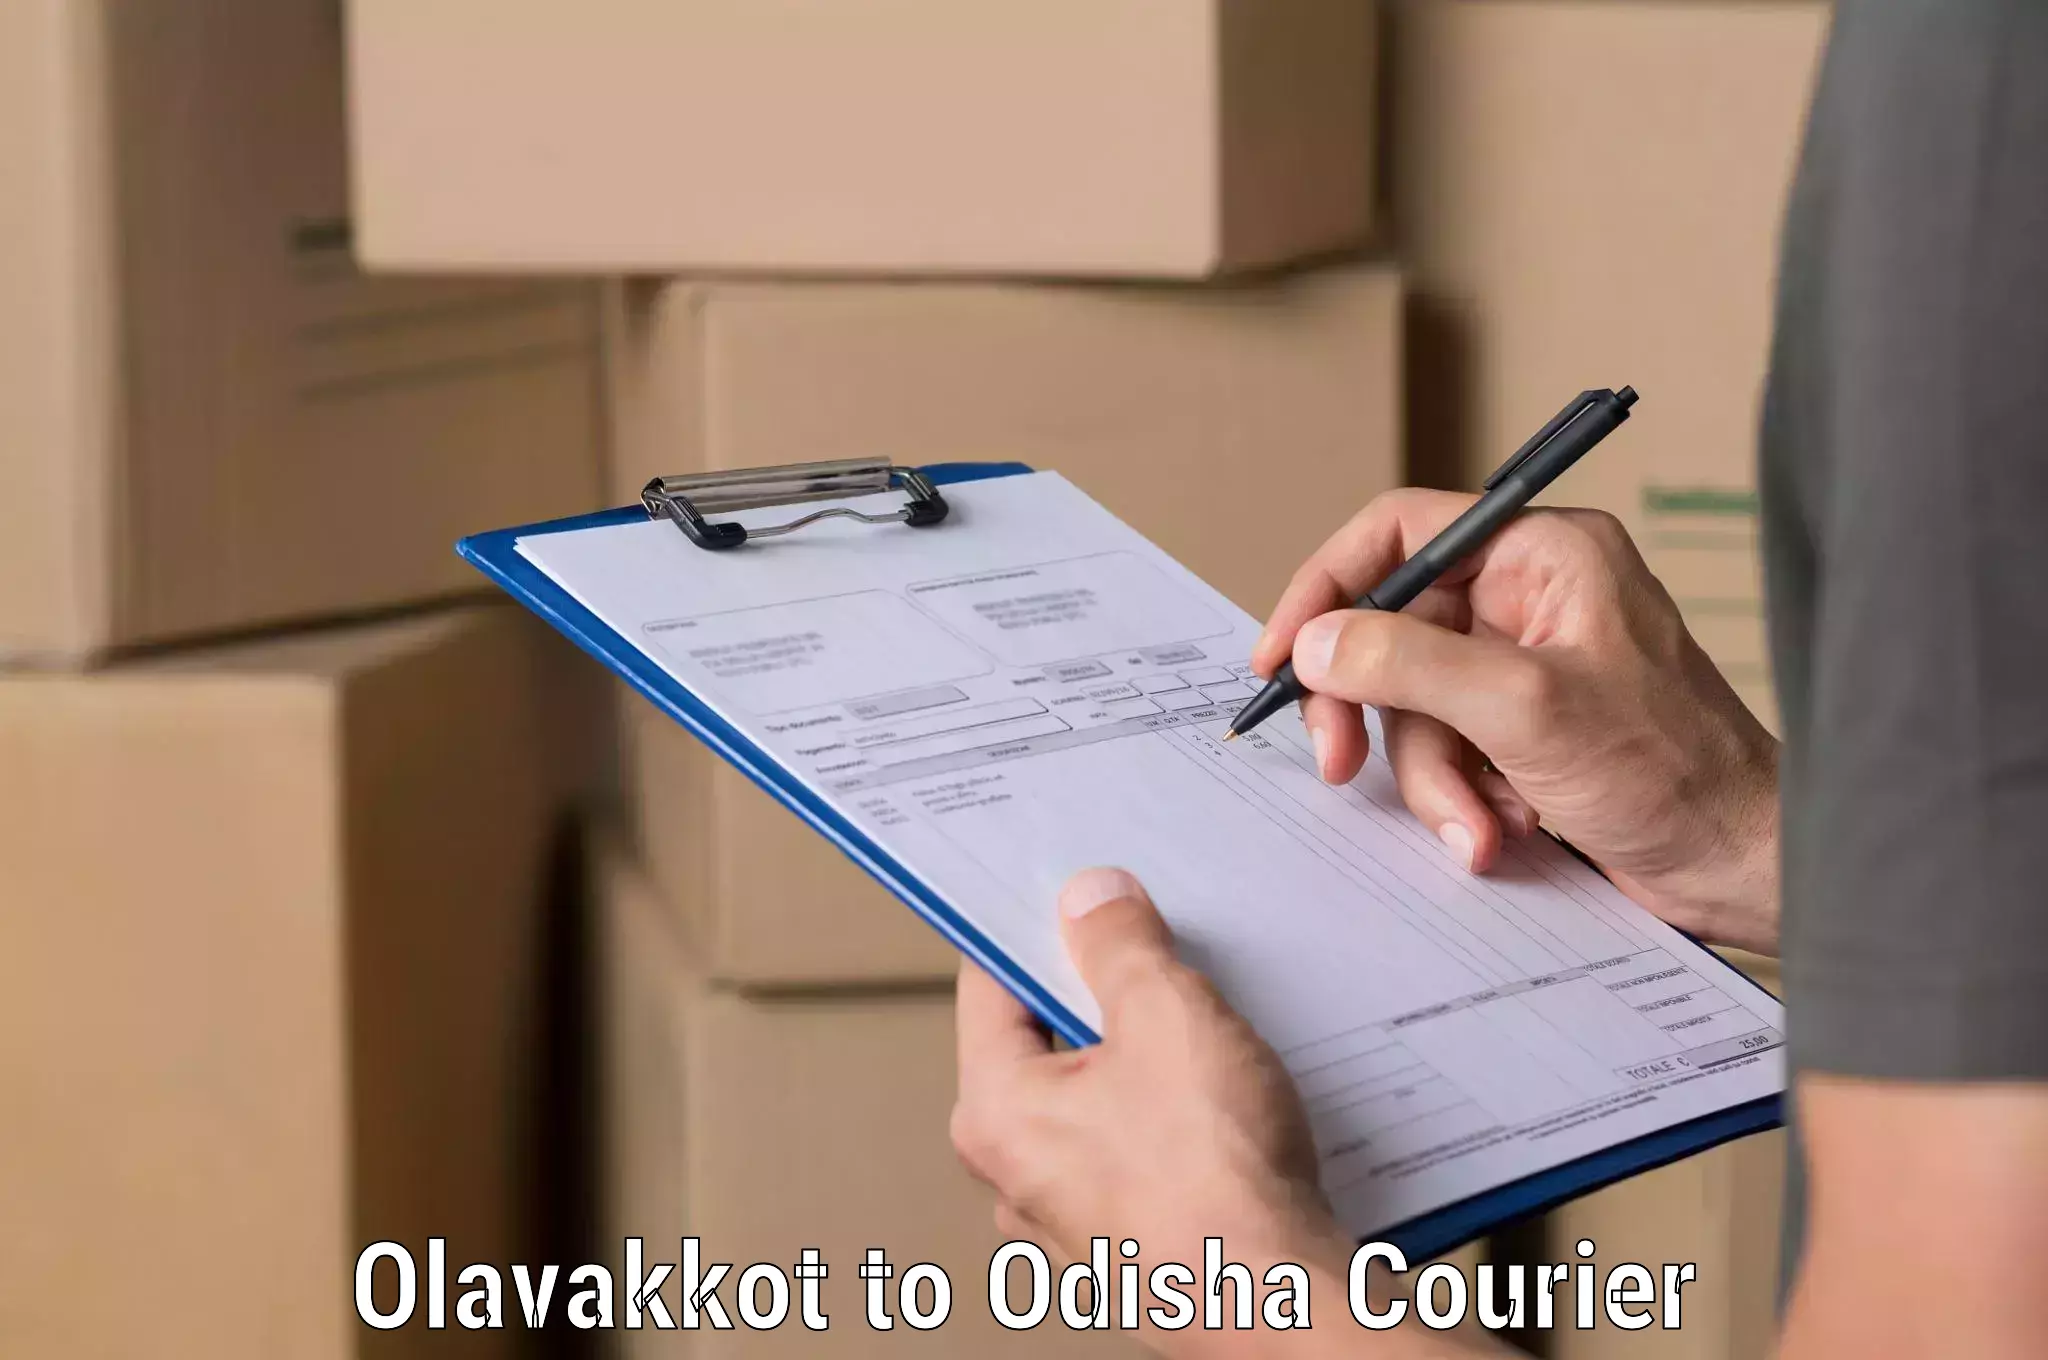 Full-service courier options Olavakkot to Tikiri